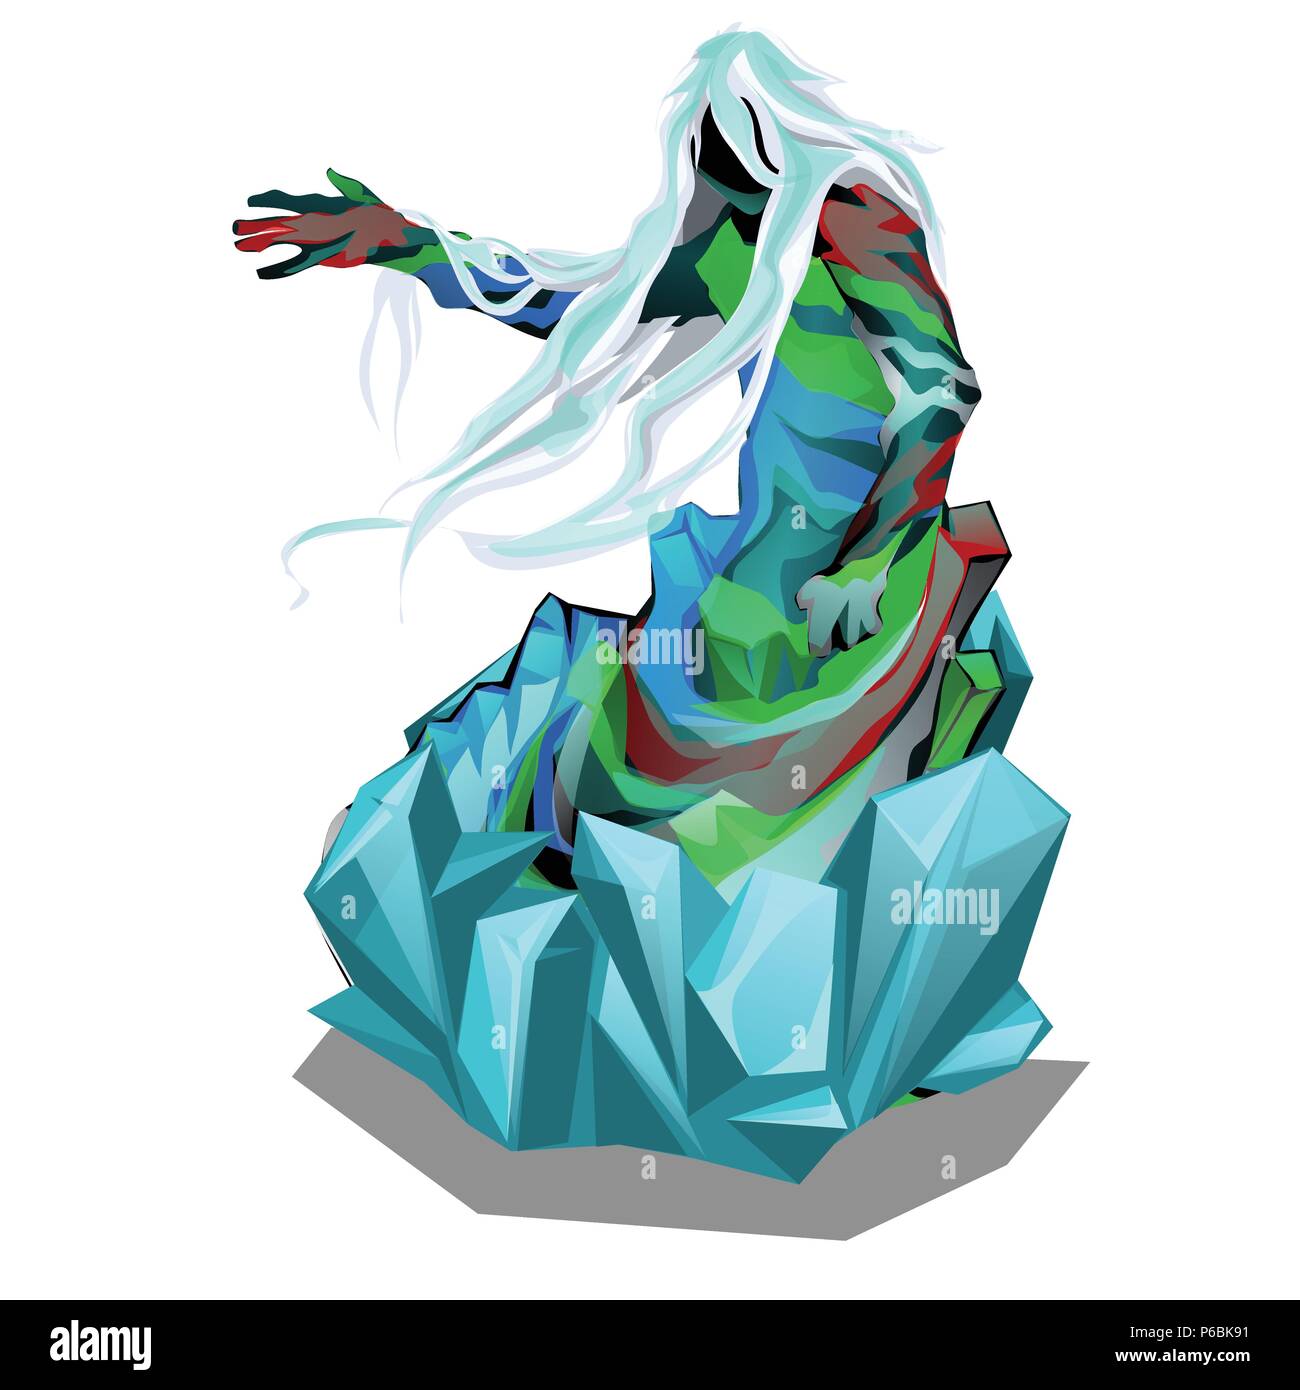 La statua in forma di esseri astratti in cristalli di ghiaccio isolato su sfondo bianco. Vector cartoon close-up illustrazione. Illustrazione Vettoriale